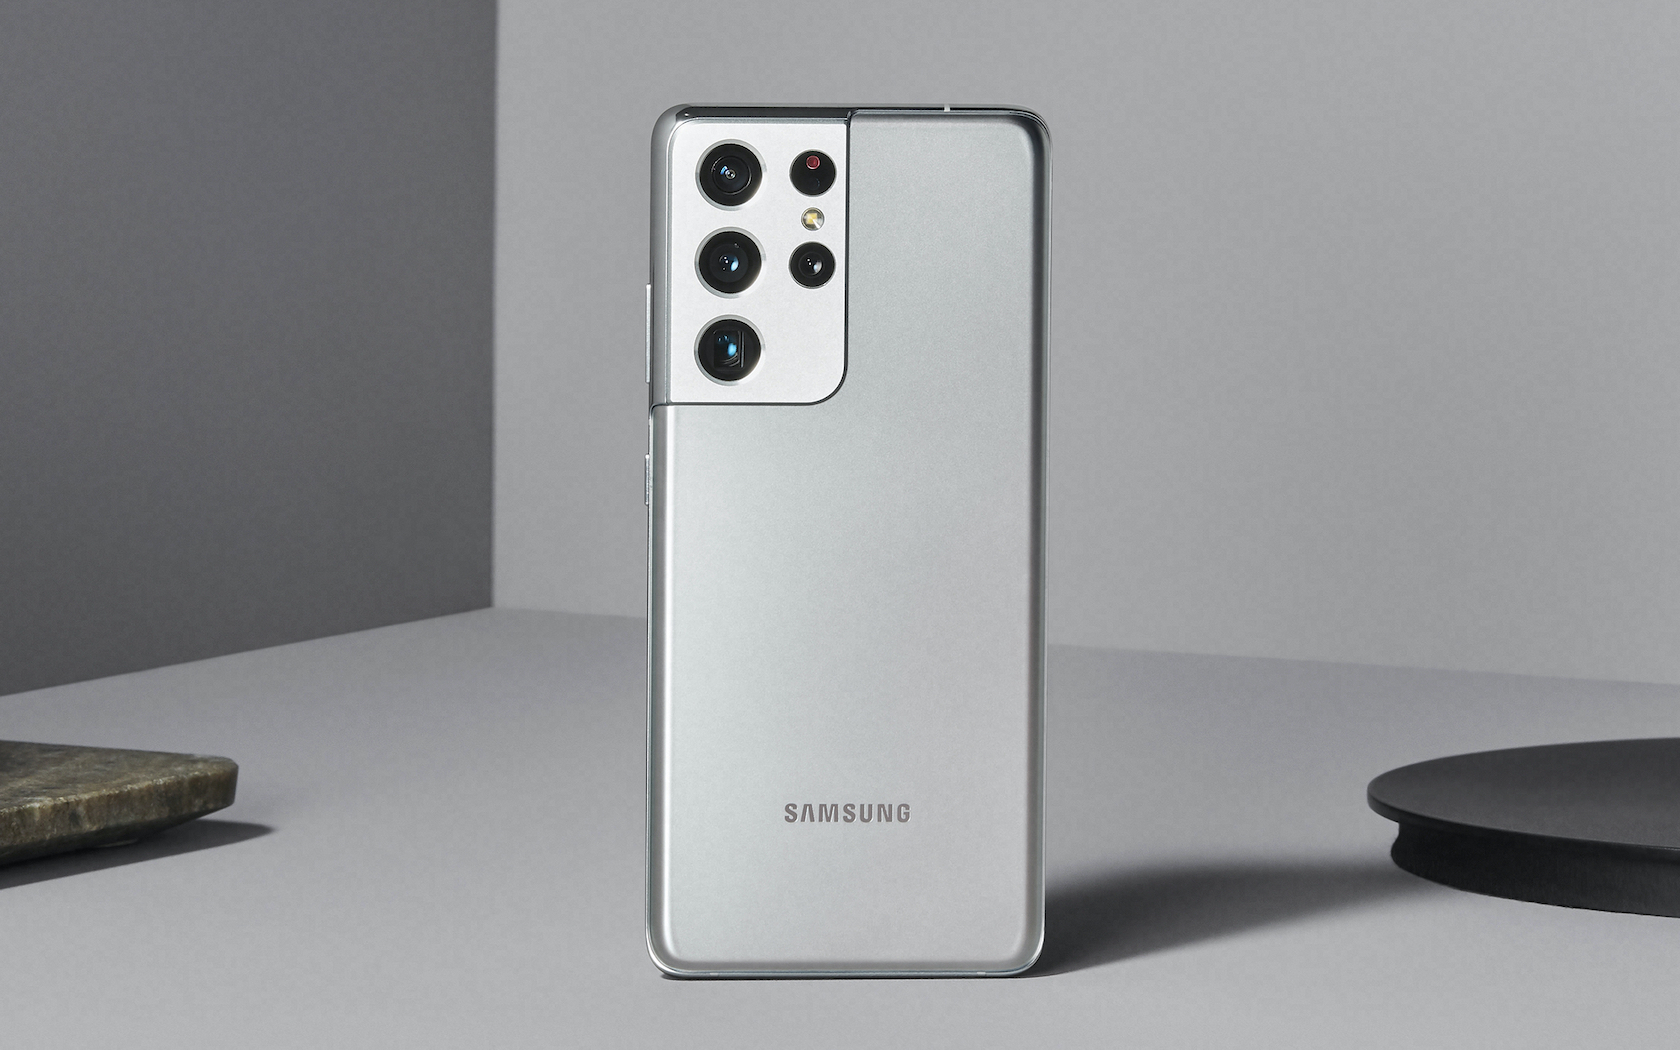  Samsung Galaxy S 21 Ultra